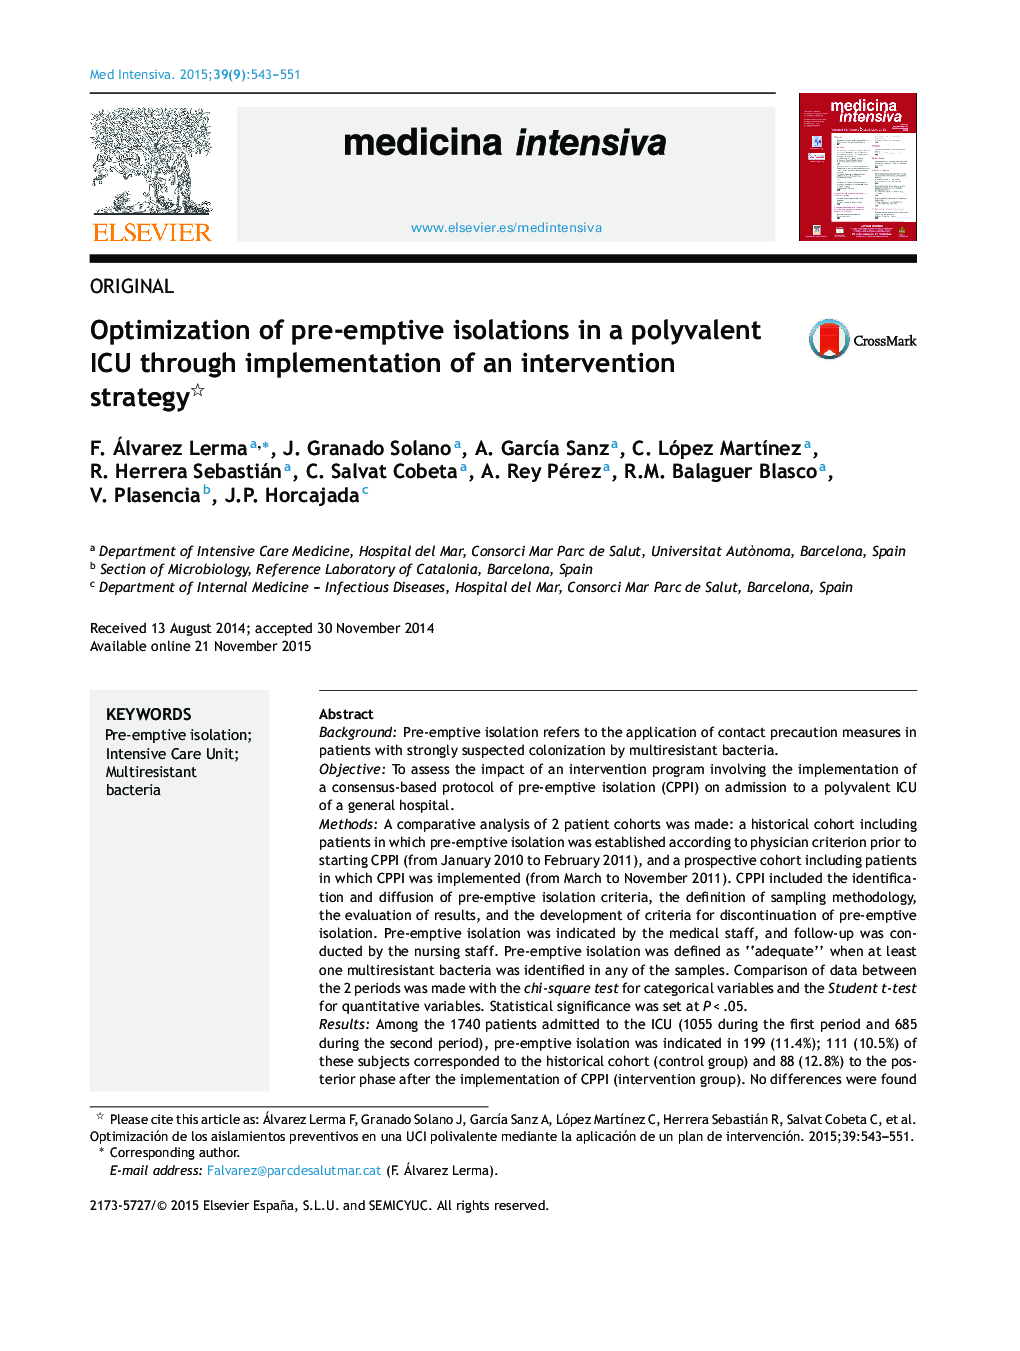 بهینه سازی جداسازی های پیشگیرانه در یک ICU چندظرفیتی از طریق اجرای یک استراتژی مداخله